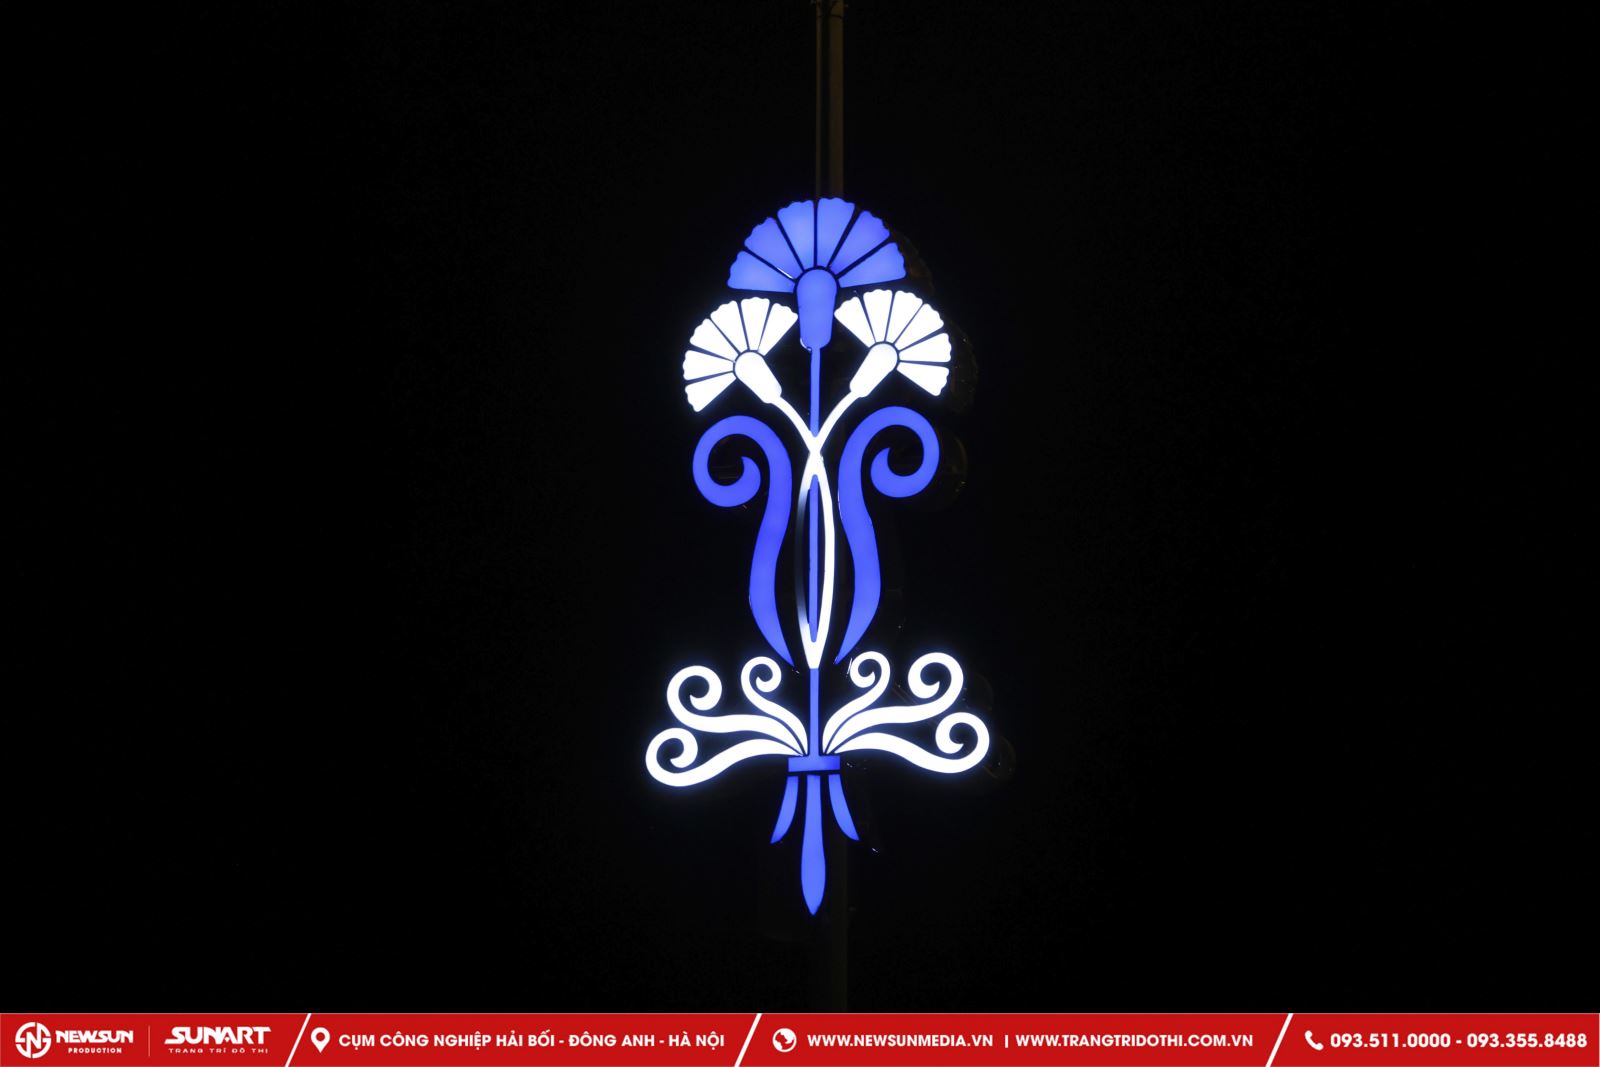 Các thiết kế đèn led nên sử dụng loại hình đơn giản và có độ bền